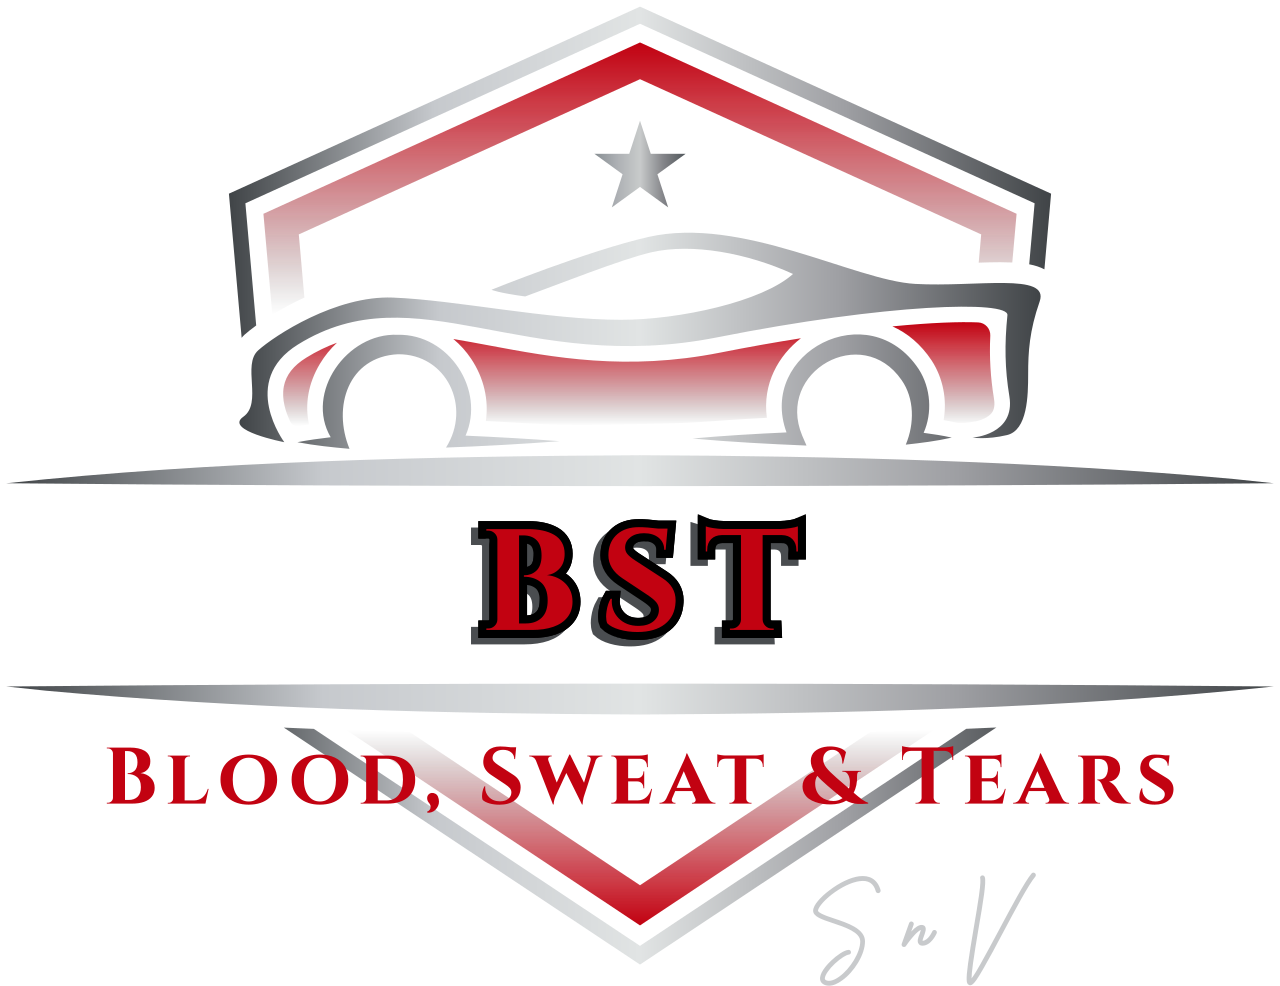 BST's logo